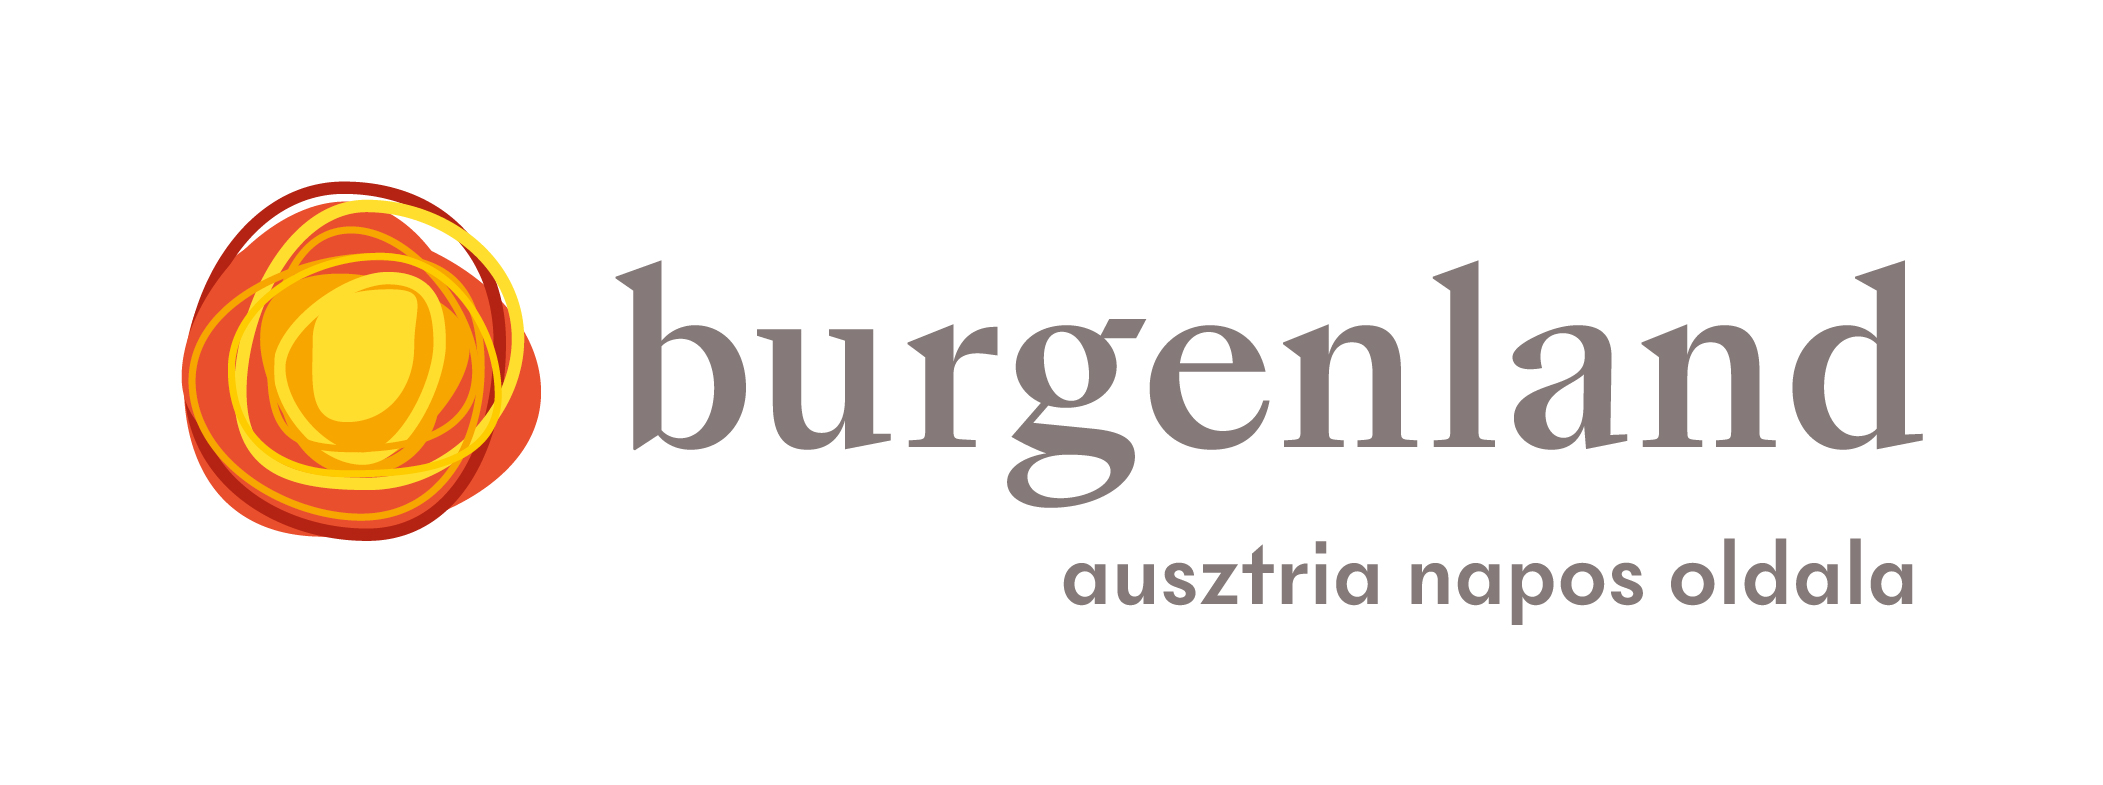 24h Burgenland extrém nyereményjáték-8